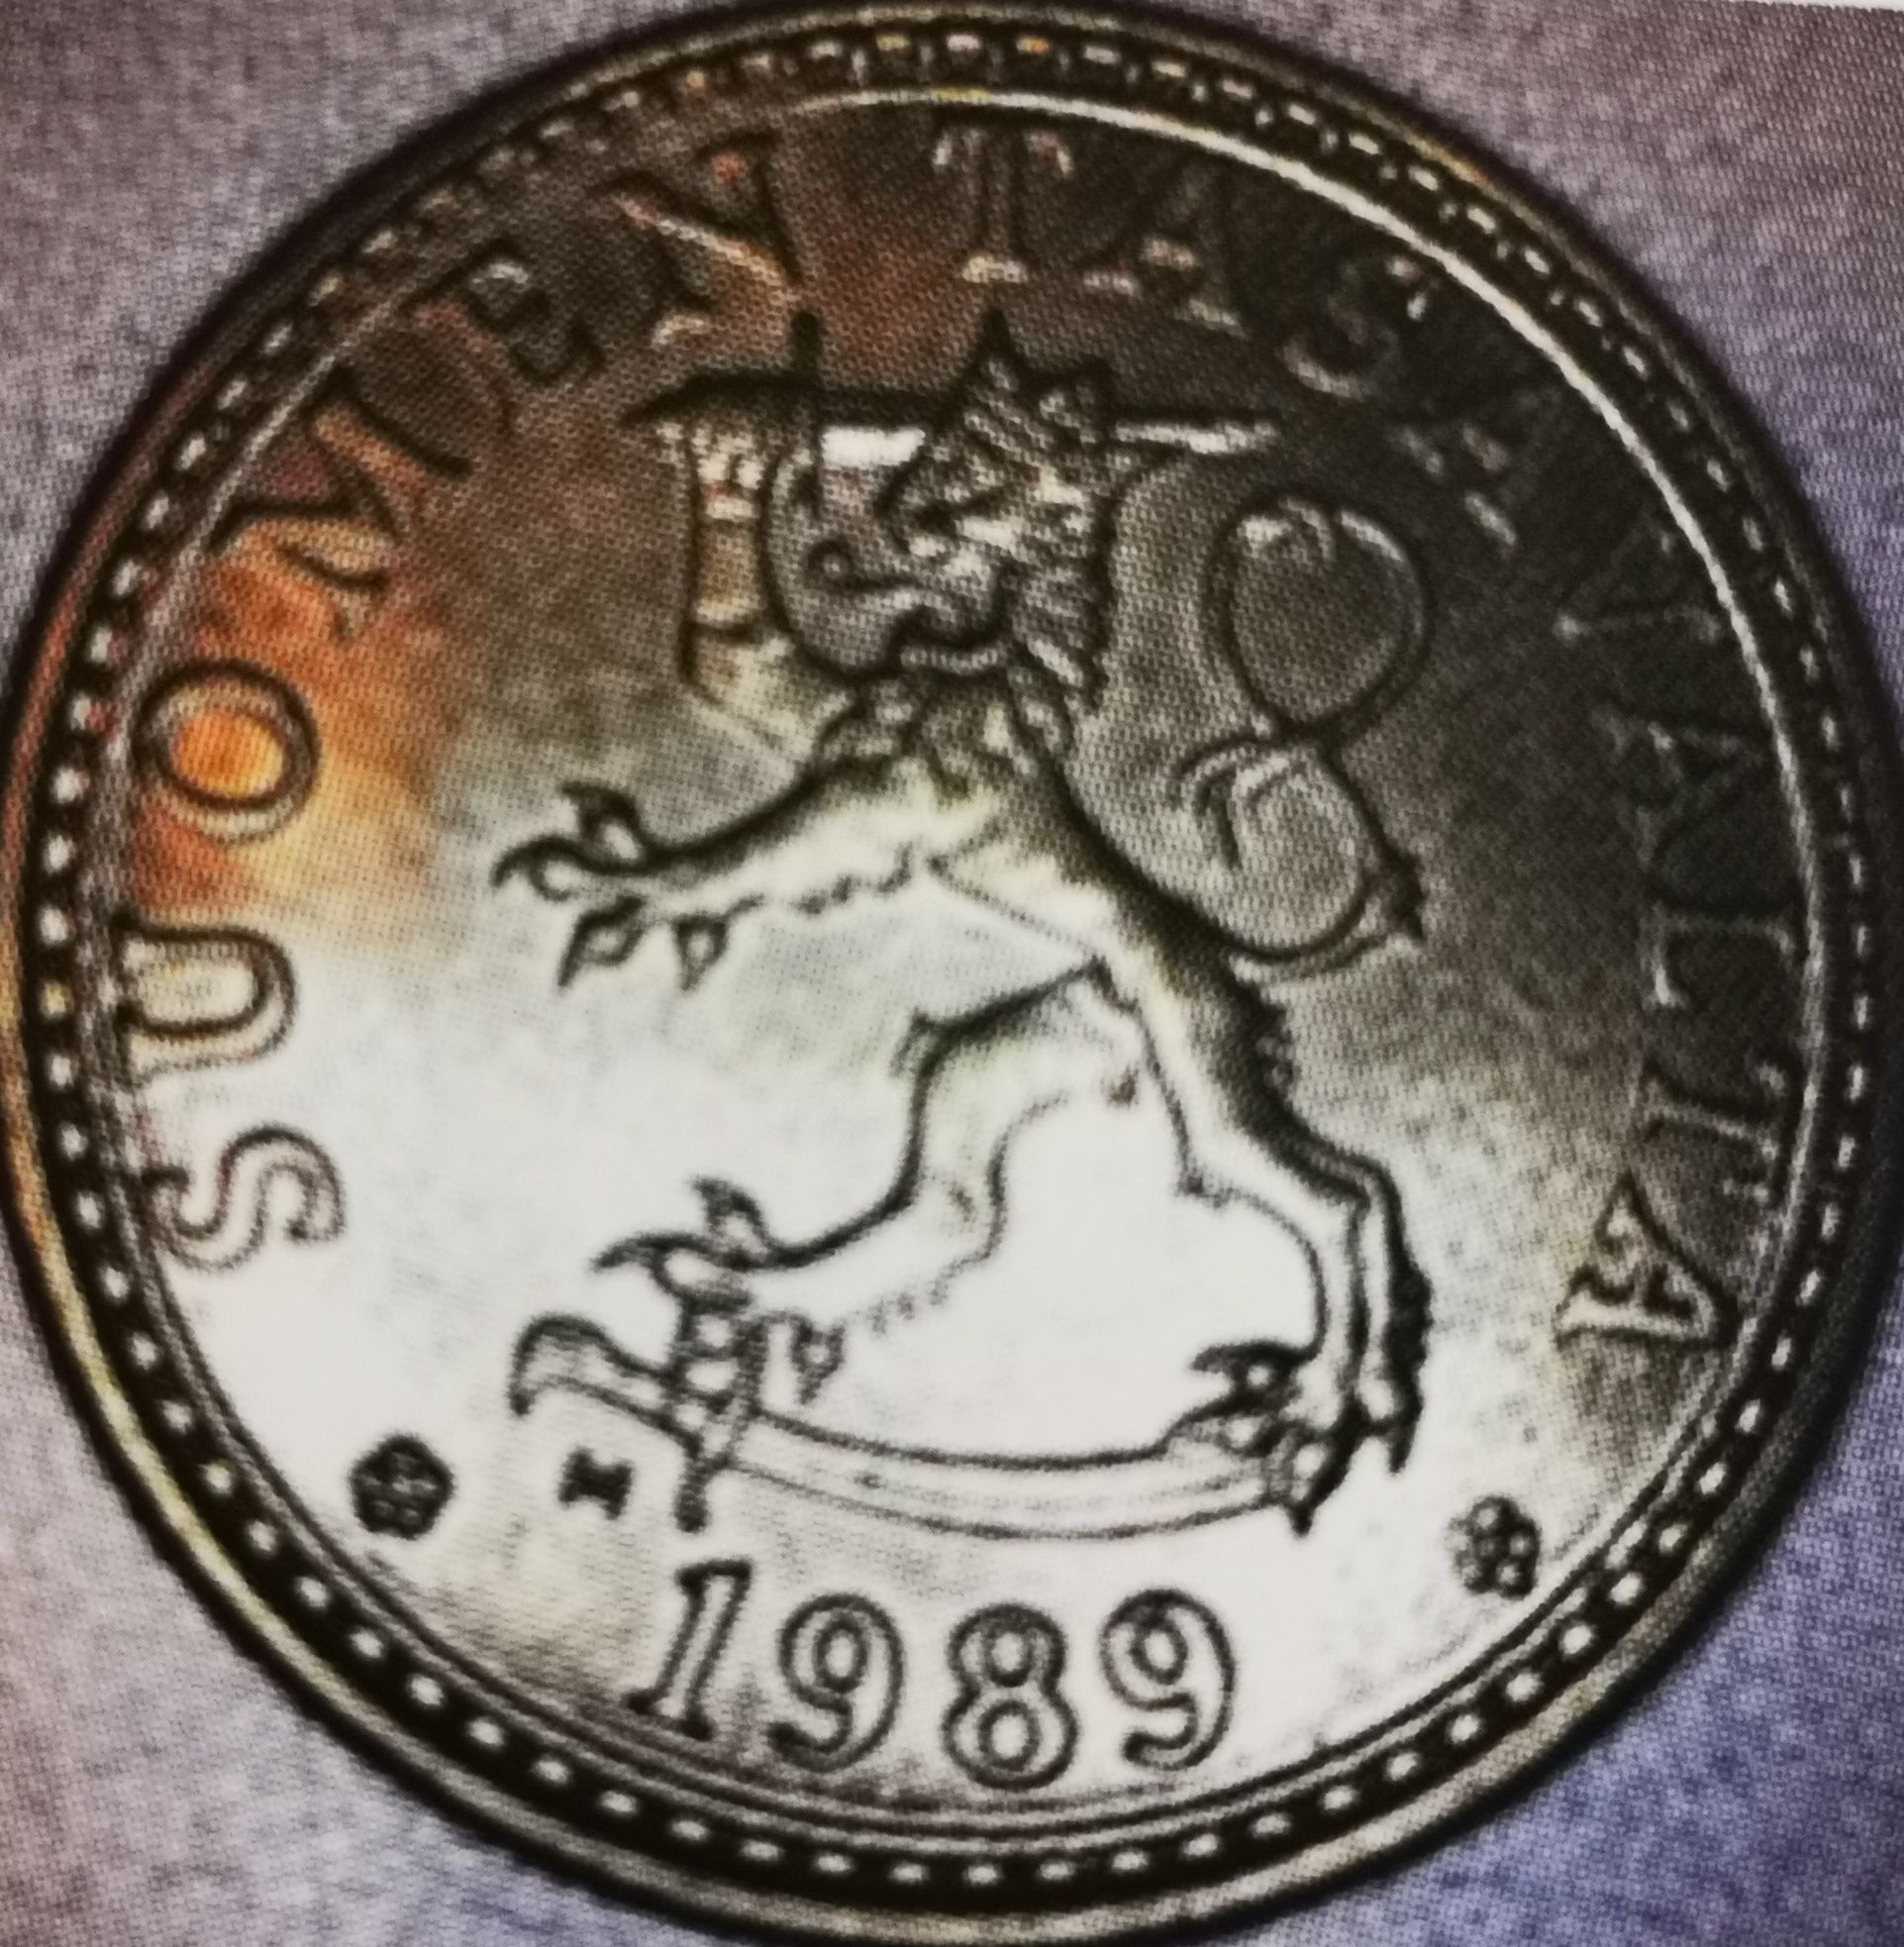 20 penniä 1989 variantti 1.3 tunnuspuoli